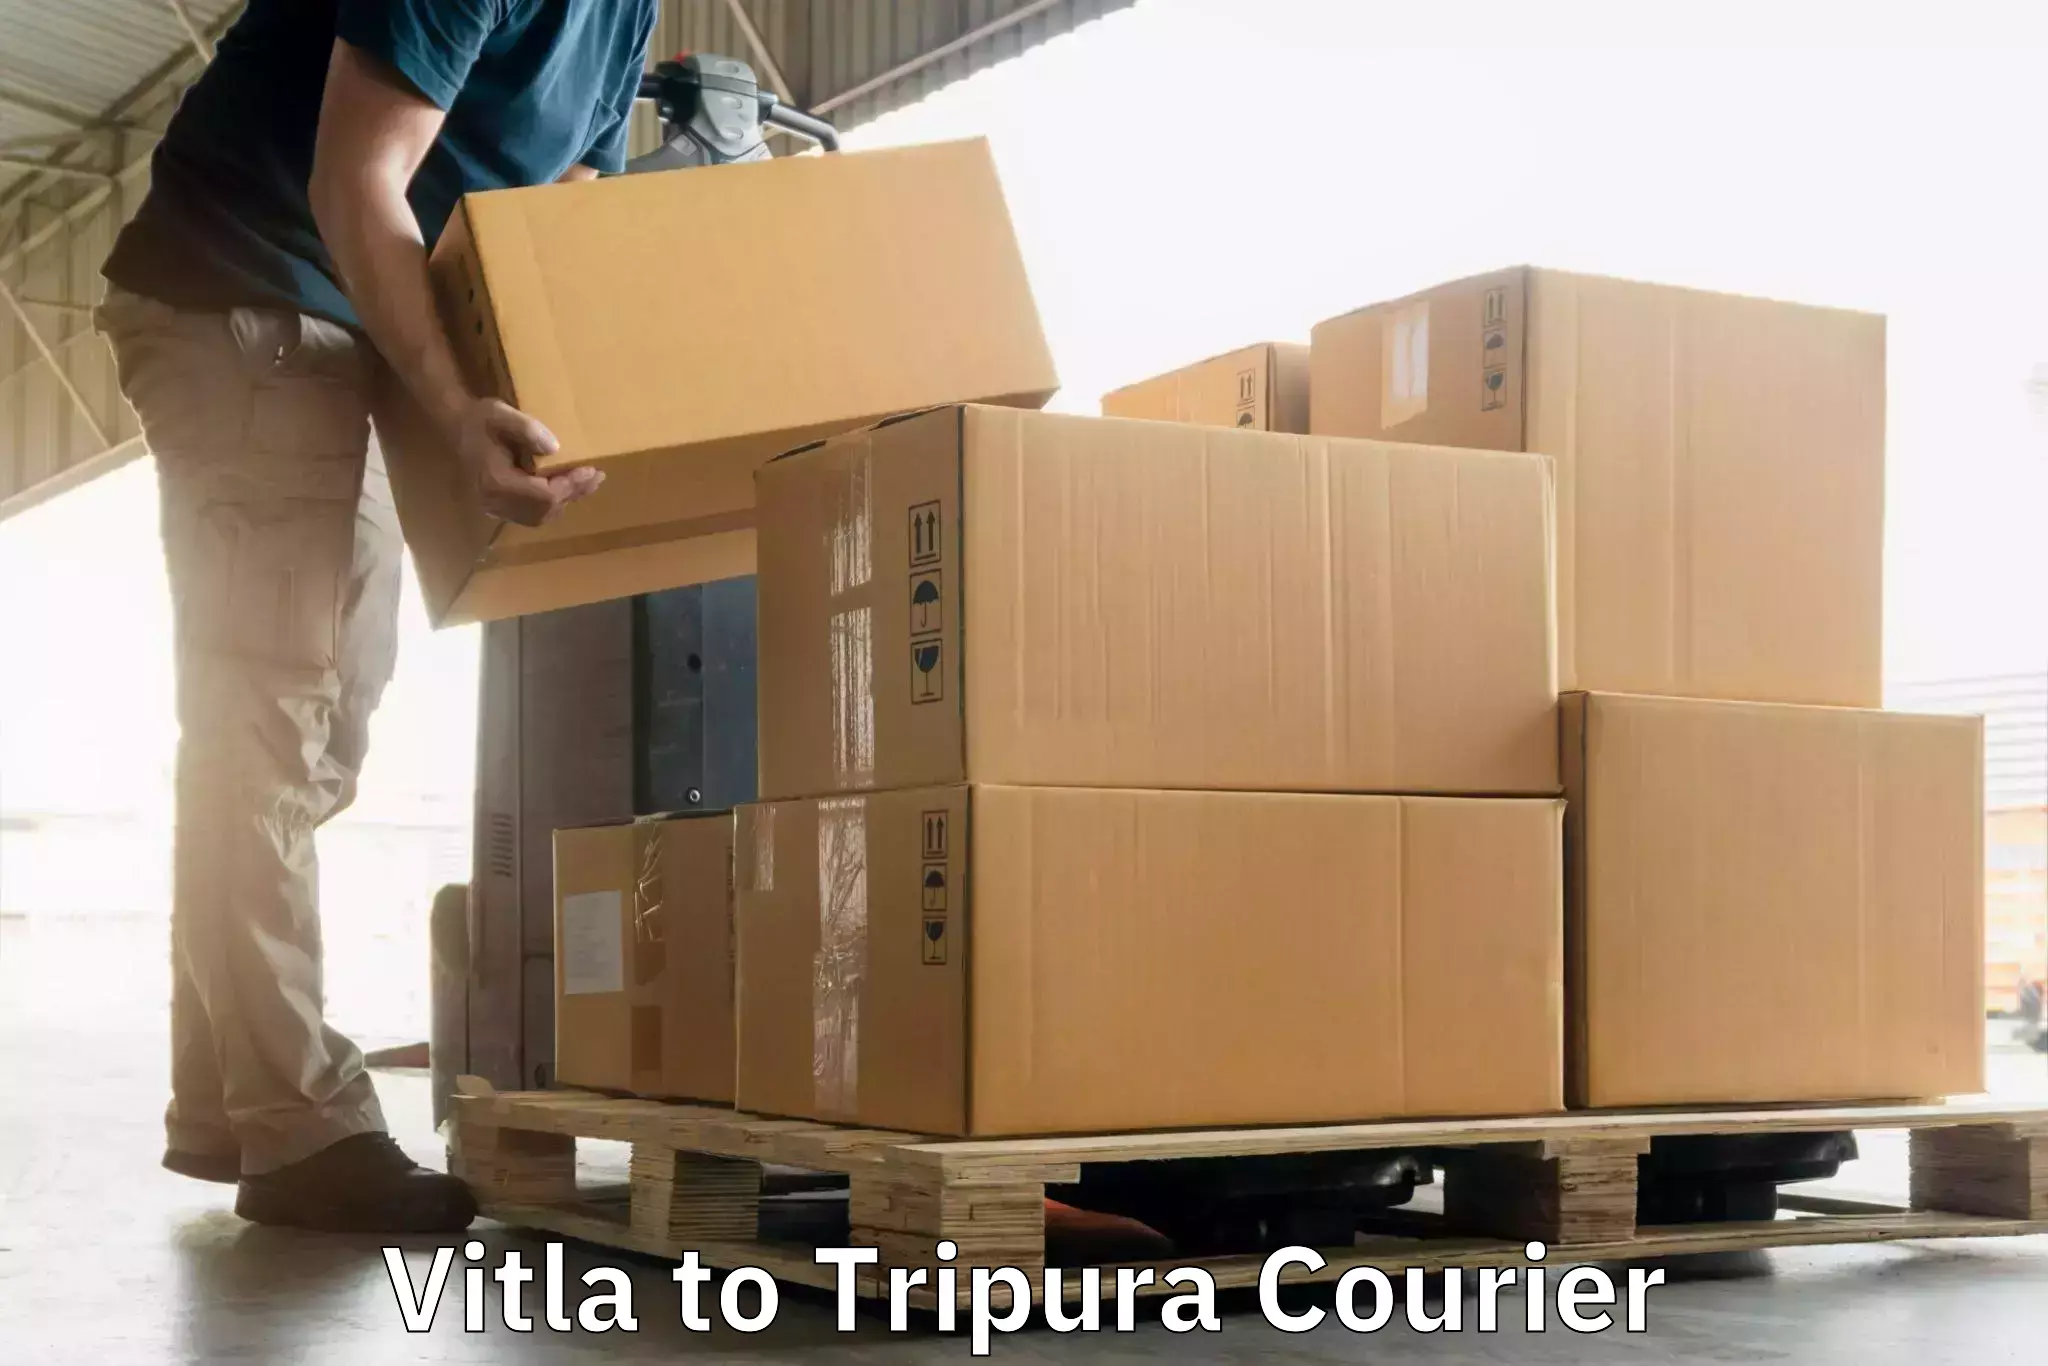 Door-to-door freight service Vitla to North Tripura